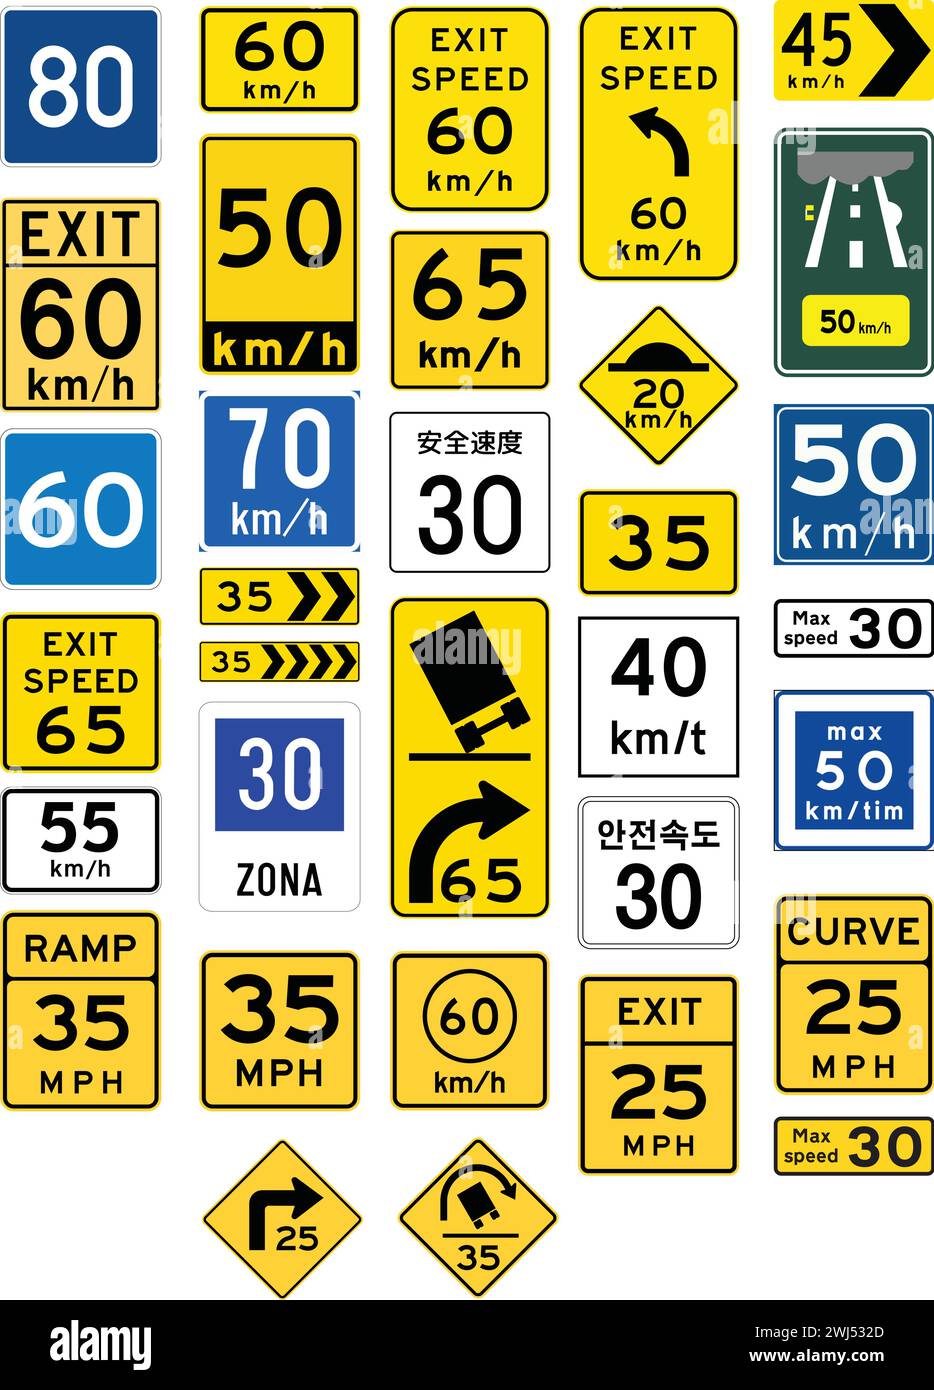 Limite de vitesse conseillée, une limite de vitesse conseillée est une recommandation de vitesse par un organisme directeur, utilisée lorsqu'elle n'est pas évidente pour le conducteur Illustration de Vecteur